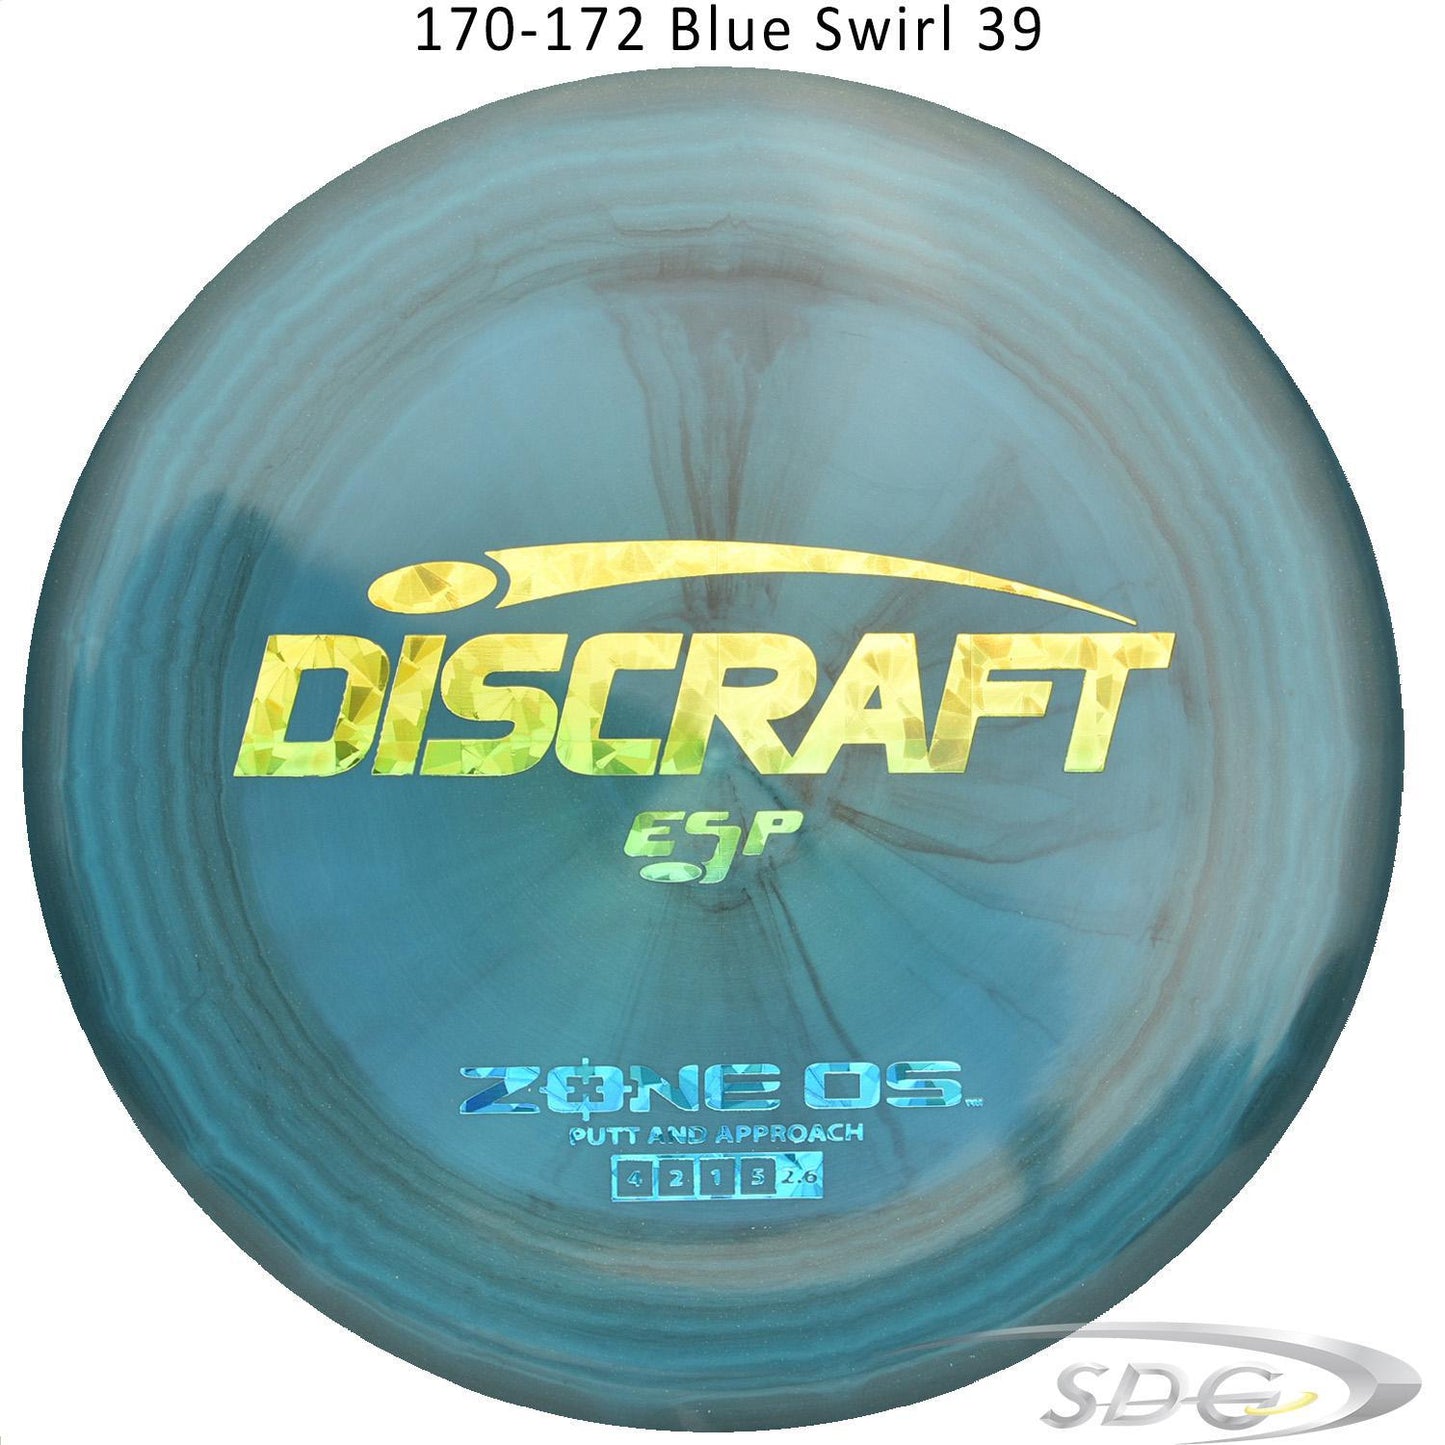 discraft-esp-zone-os-disc-golf-putter 170-172 Blue Swirl 39 